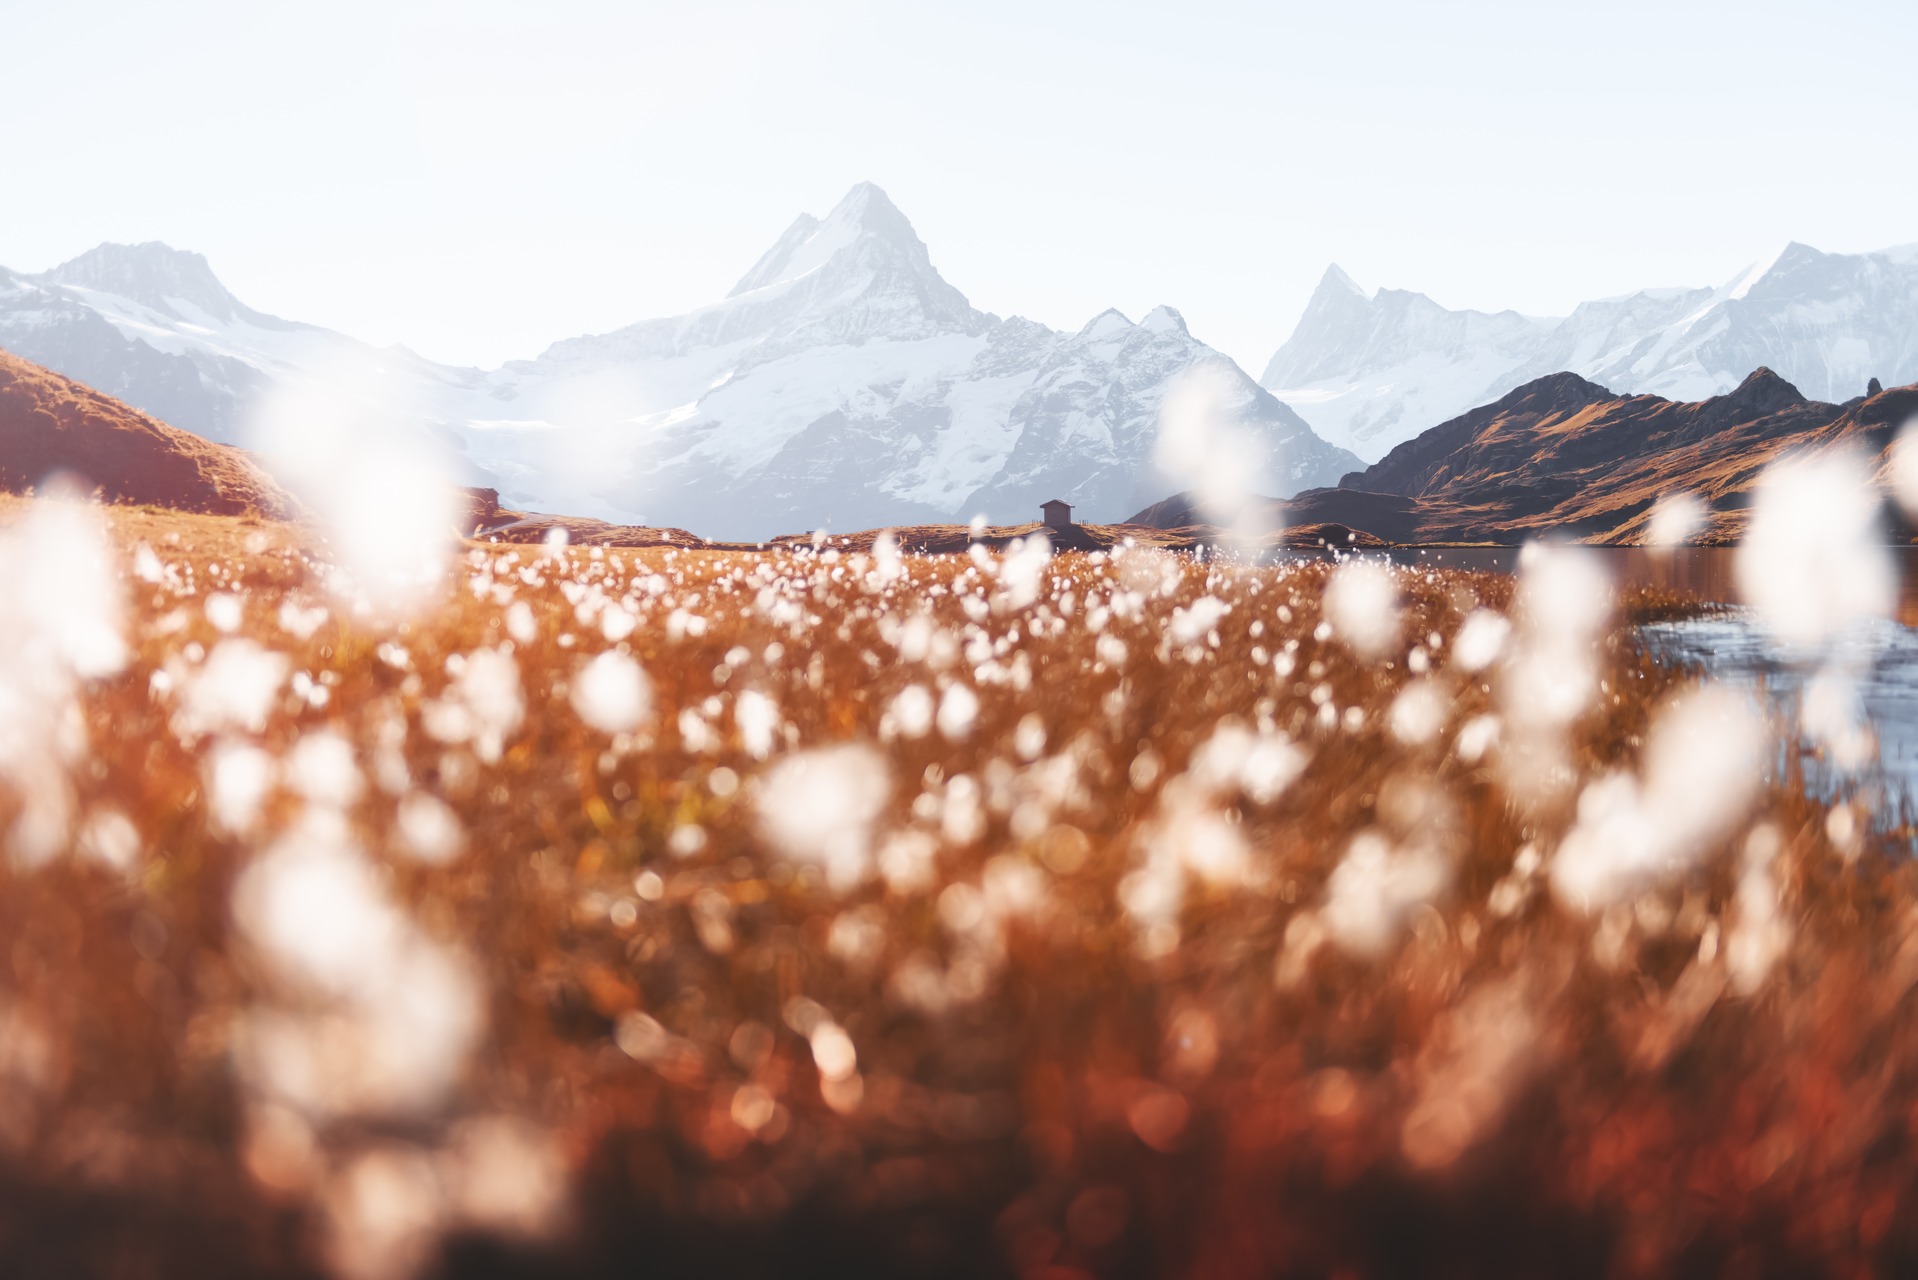 Rispetto dei suoli: una spettacolare immagine del Bachalpsee al First sopra Grindelwald nell'Oberland bernese